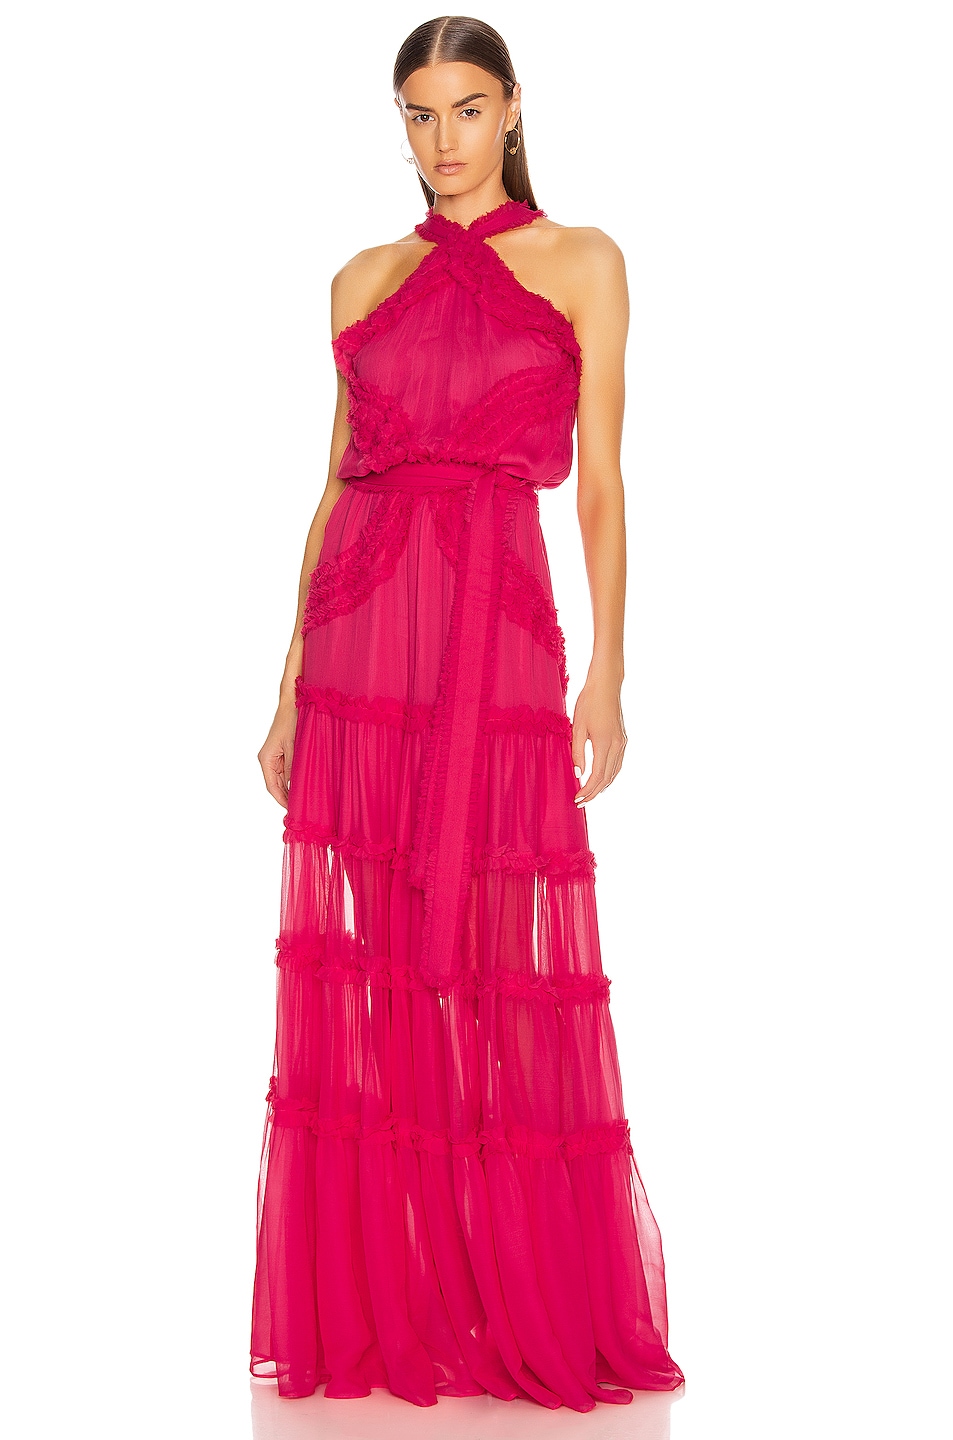 Alexis Lorinda Dress in Azalea Pink | FWRD